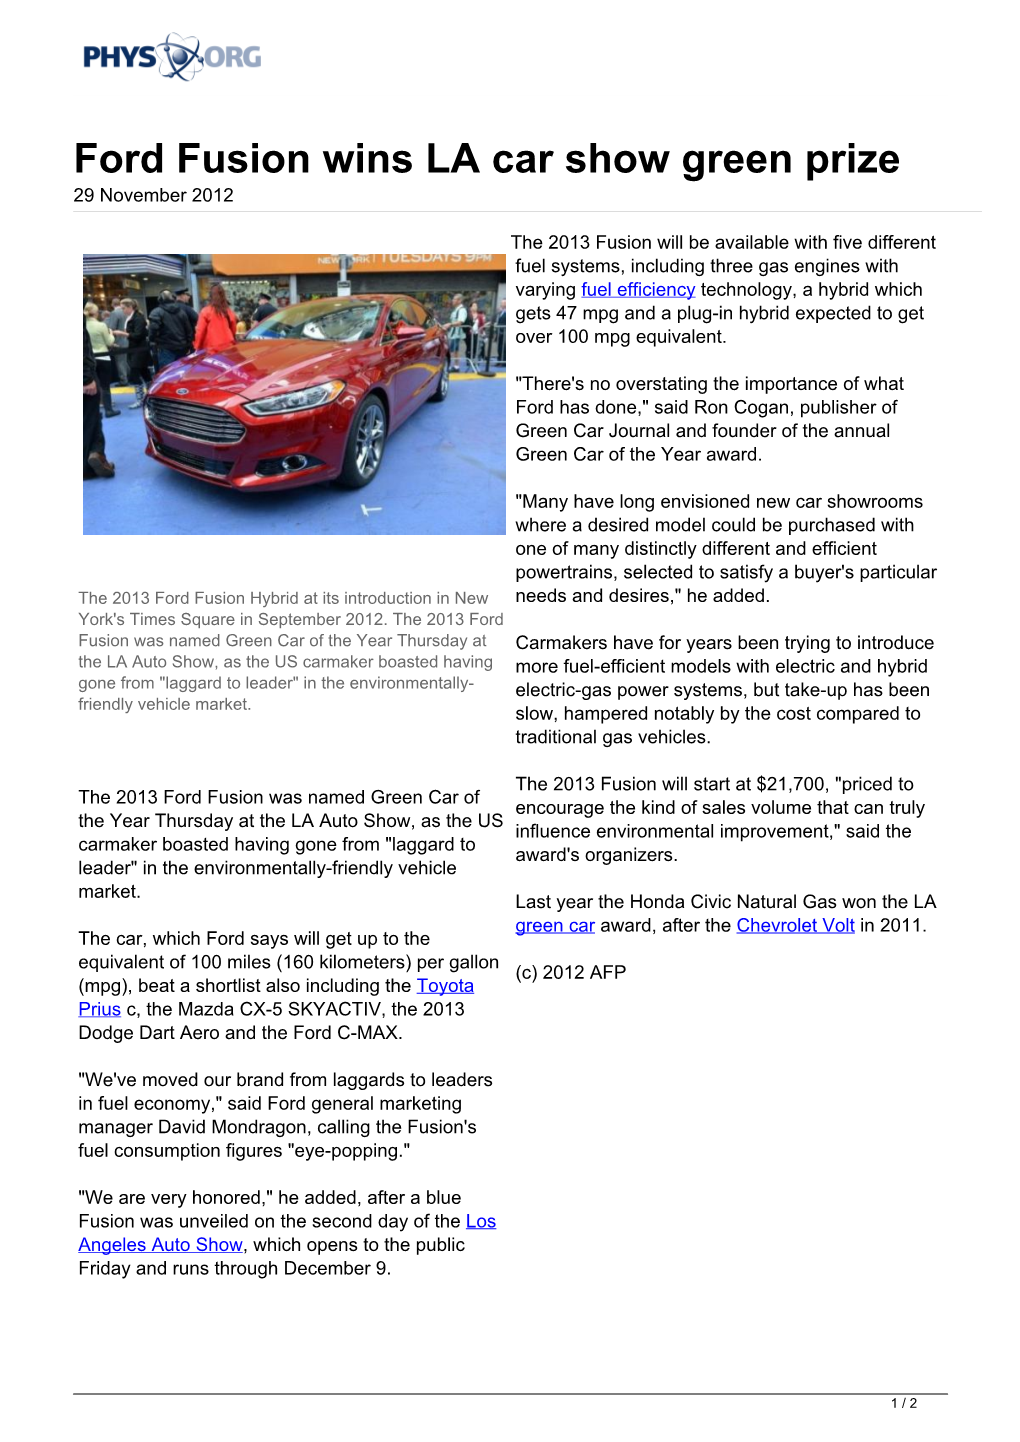 Ford Fusion Wins LA Car Show Green Prize 29 November 2012